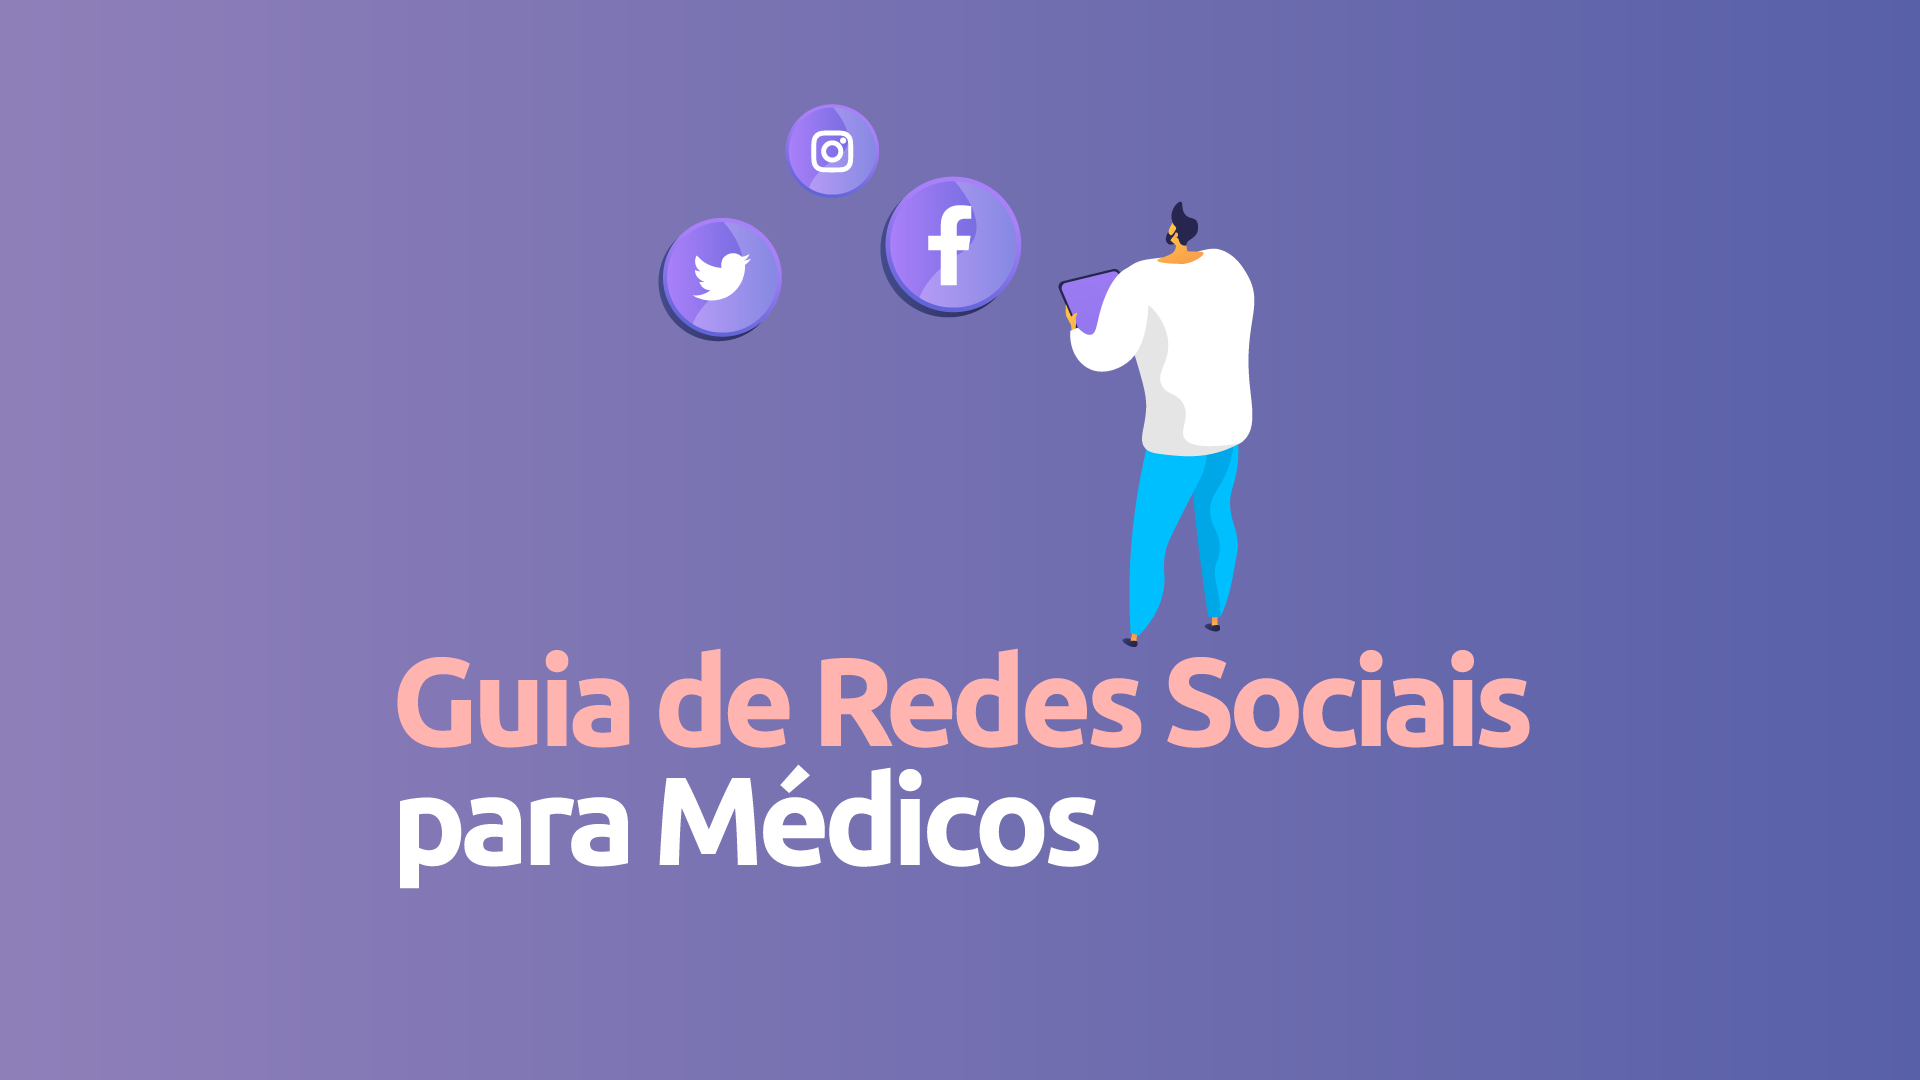 Guia de Redes Sociais para Médicos: o que fazer e o que não fazer?